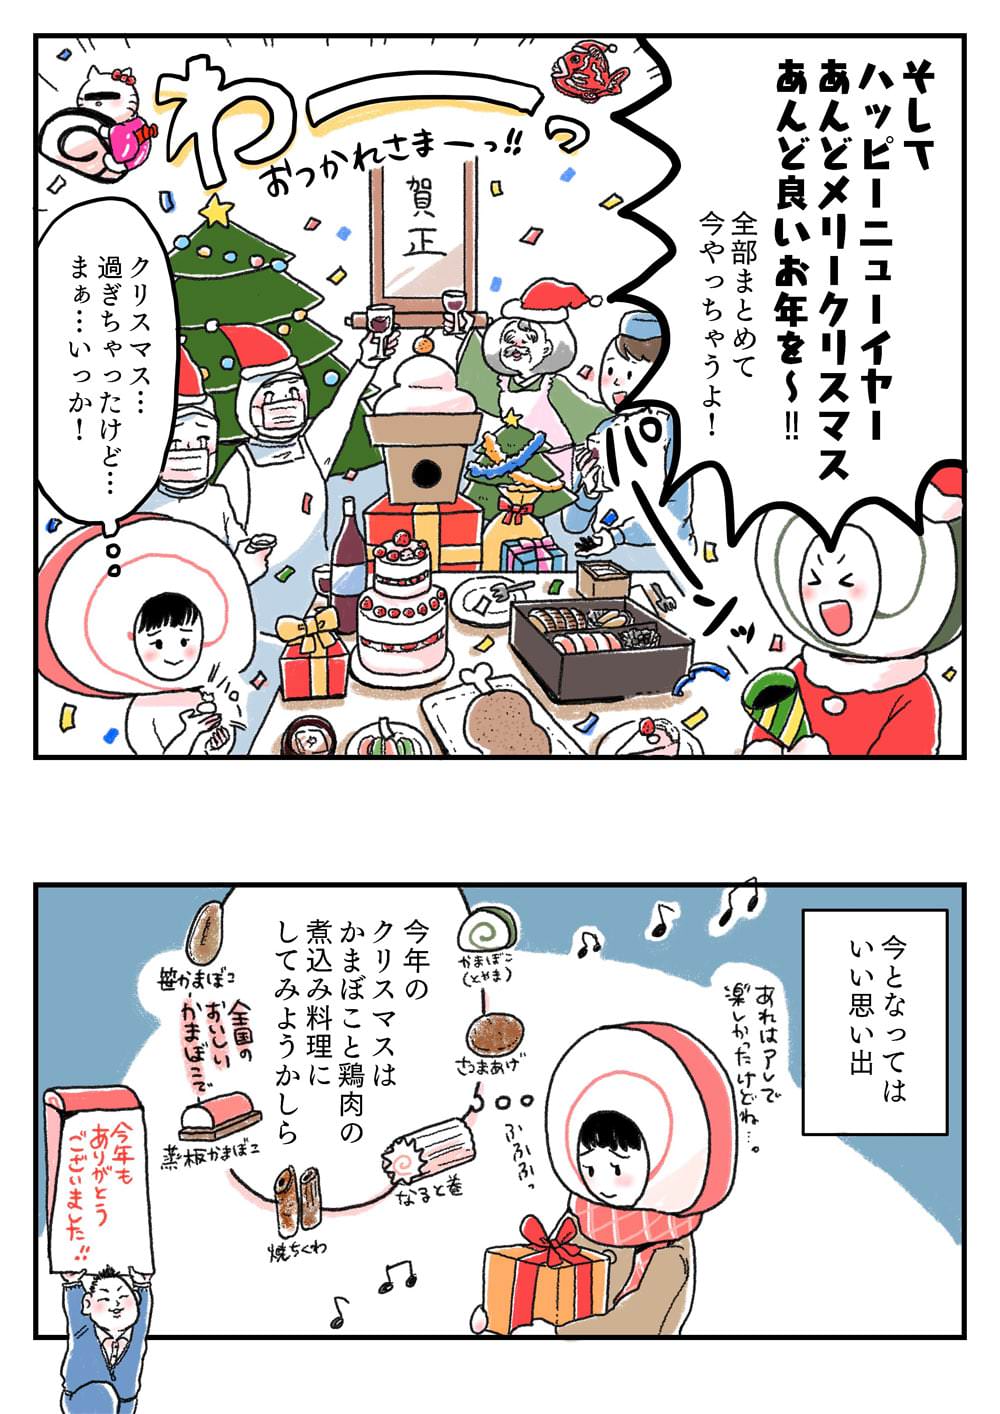 ウメカマンガ(巻) 1徹目 師走の呼吸 猫ノ型 大カマ騒動 NOクリスマスはもう我慢できん！